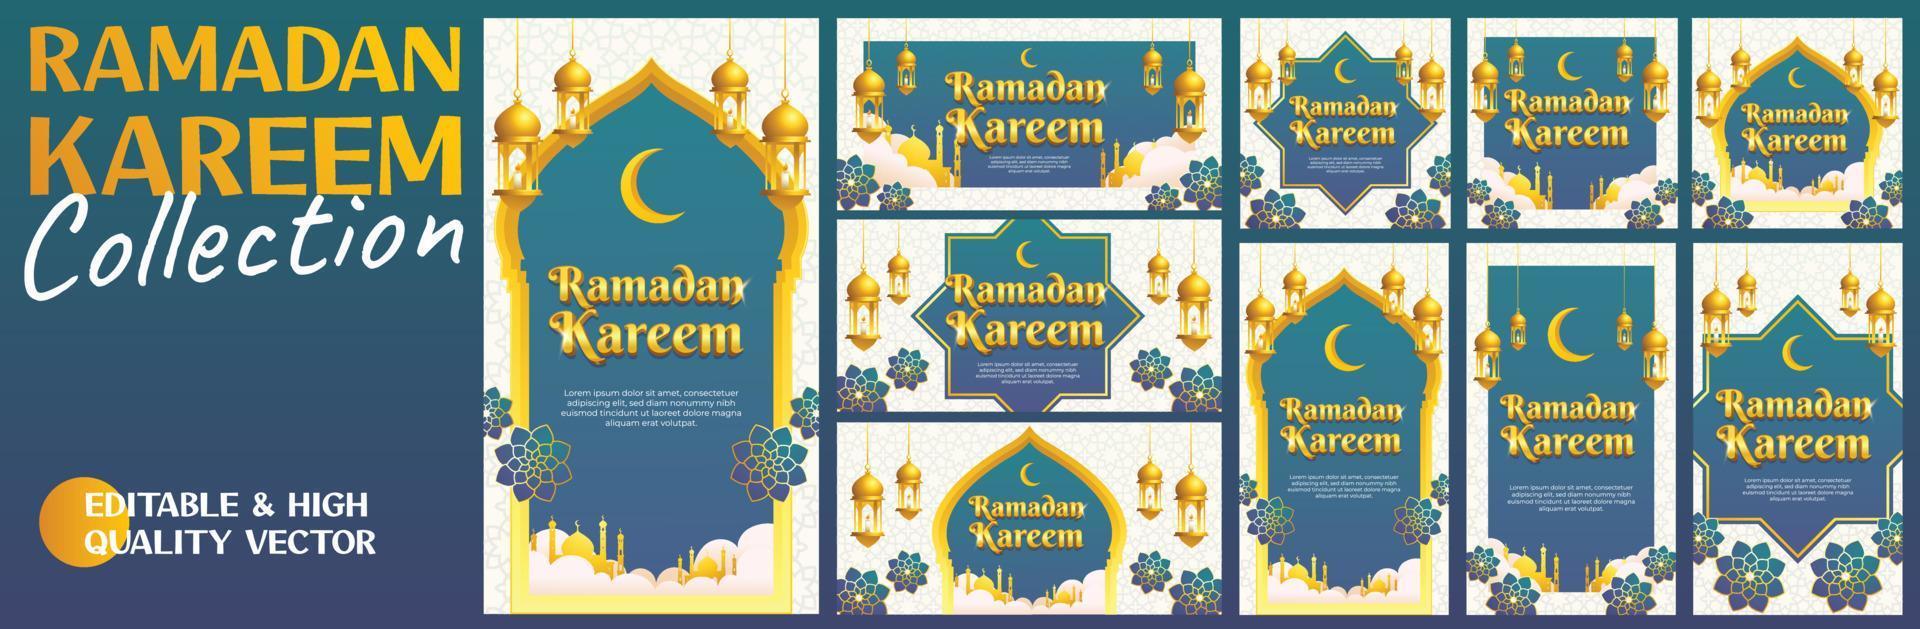 Ramadan Kareem-Grußkarte im islamischen Stil in Blaugold, Hintergrund, horizontales Banner und Social-Media-Story-Vorlage. einschließlich ramadan-element wie laterne, moschee und arabisches muster. Mega-Set-Paket vektor